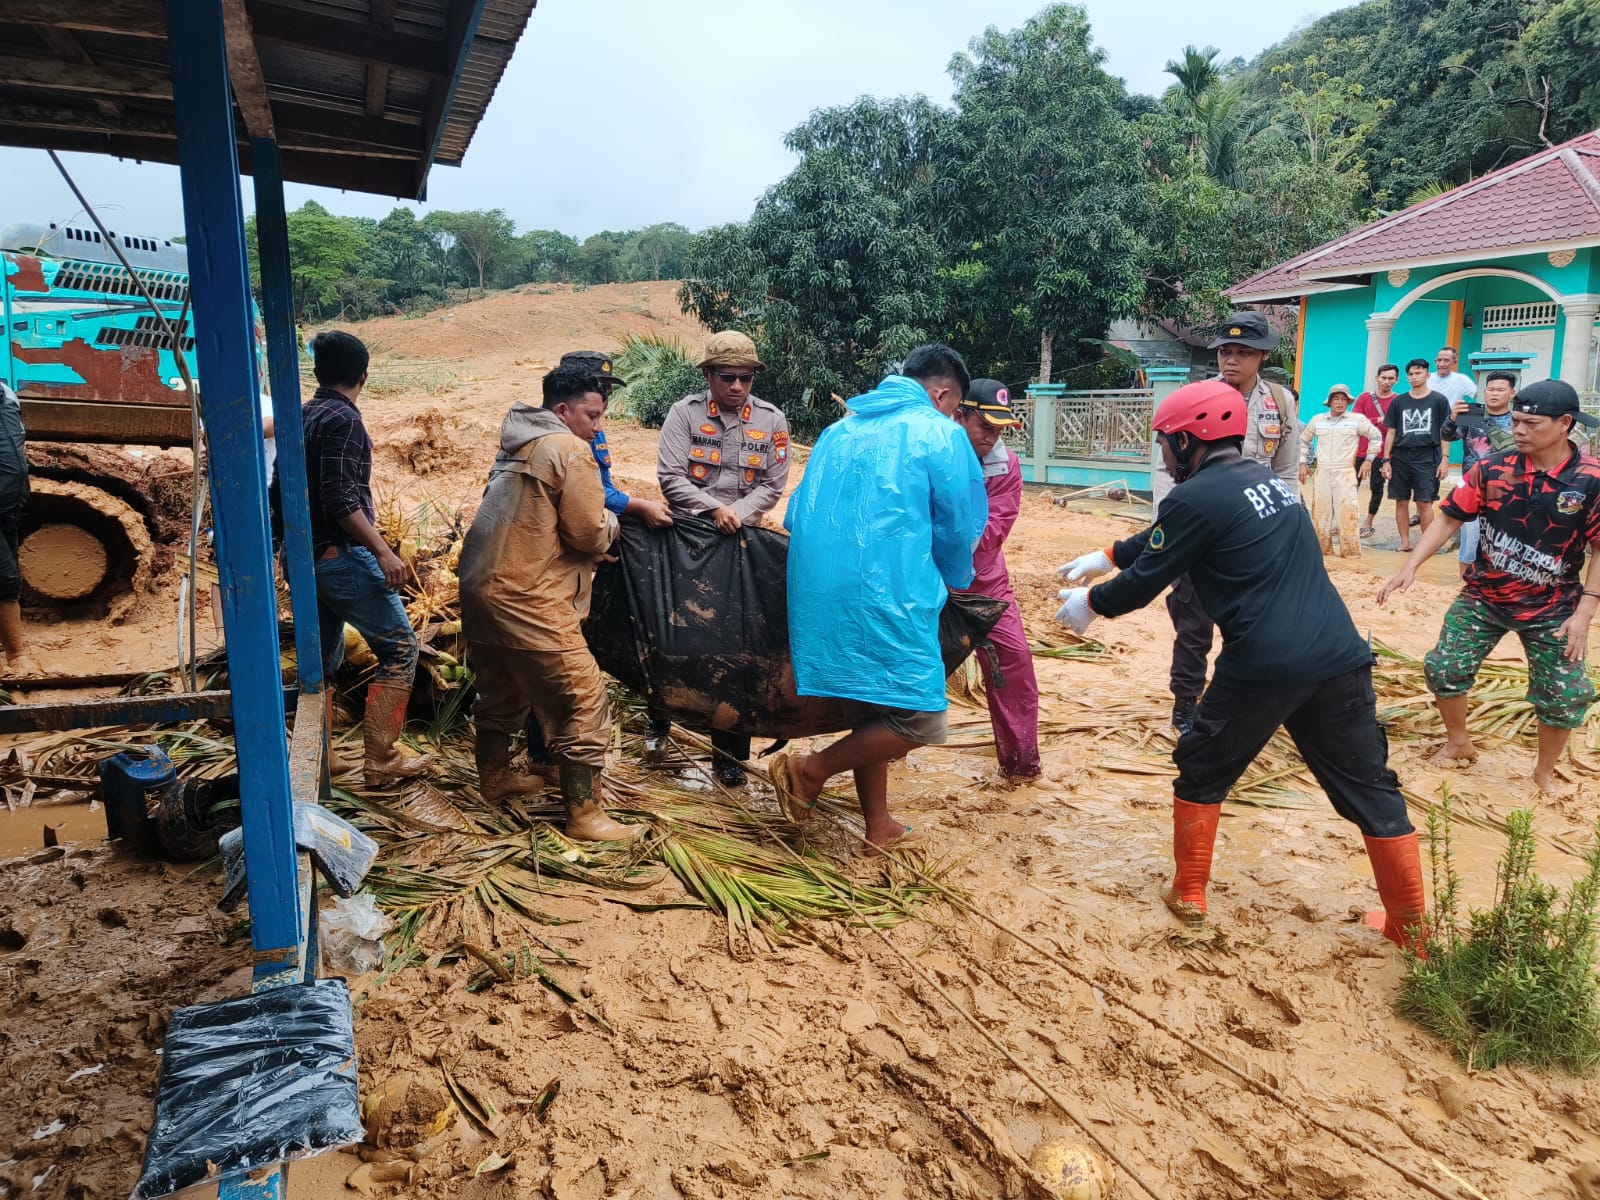 Kapolres Natuna AKBP Nanang Budi Santosa, S.I.K bersama personil melakukan pencarian dan evakuasi jenazah korban bencana tanah longsor yang terjadi di Pulau Serasan. Selasa (07/03/2023)./f.dok.HPK.